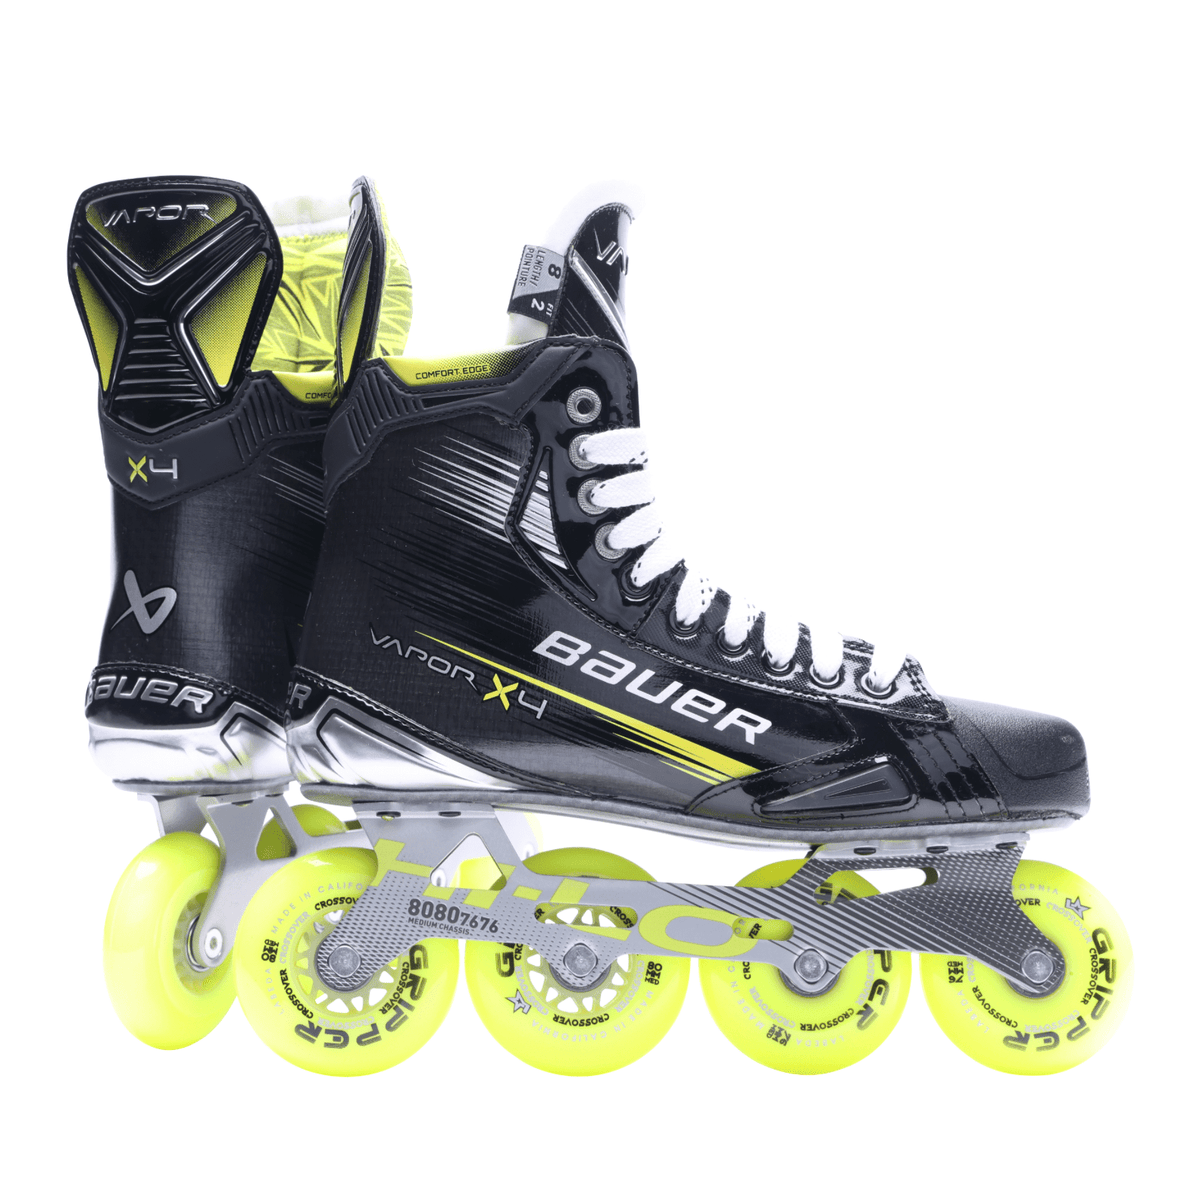 Bauer Vapor X4 Inline Hockey Skates